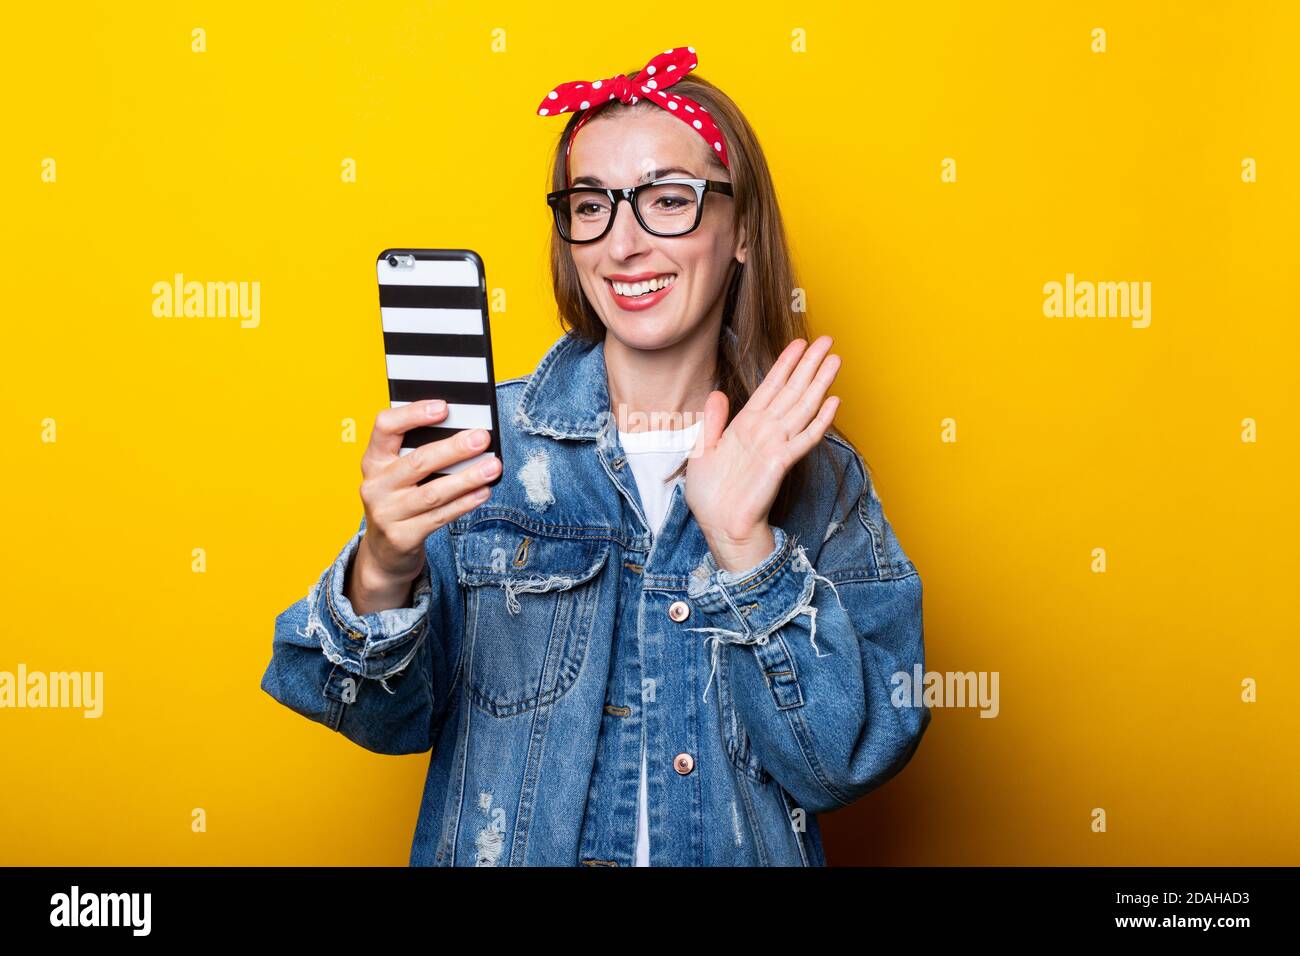 Junge Frau in Jeansjacke und Brille hält ein Telefon In ihren Händen und spricht im Video-Chat auf einem Gelber Hintergrund Stockfoto